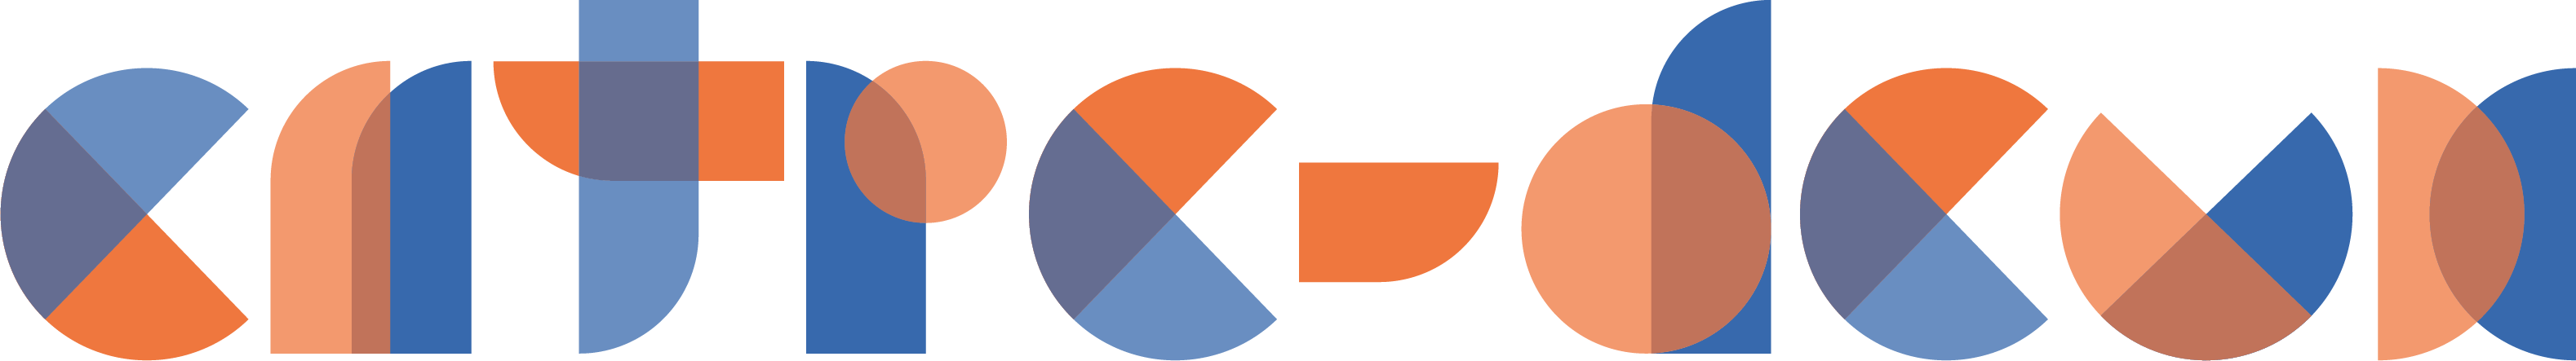 Formation Entre-Deux logo